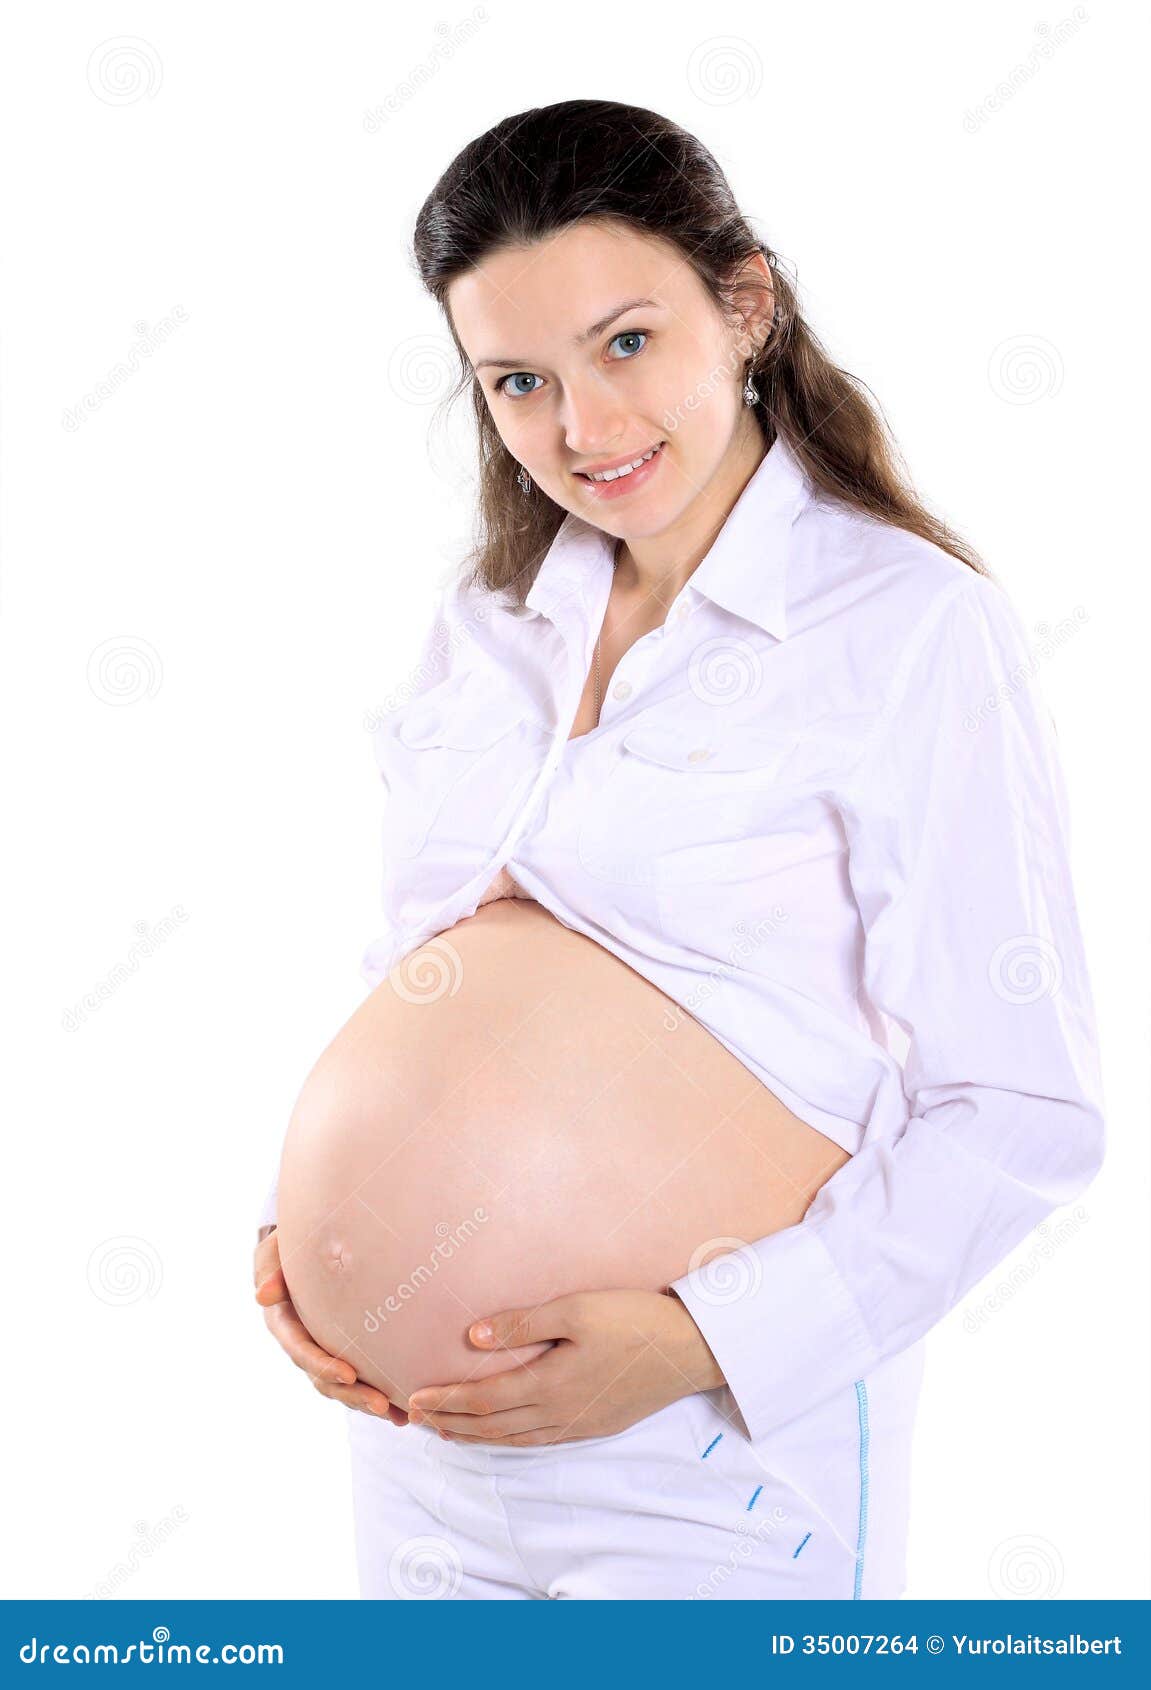 Νέα όμορφη έγκυος γυναίκα. Απομονωμένος σε ένα άσπρο υπόβαθρο.